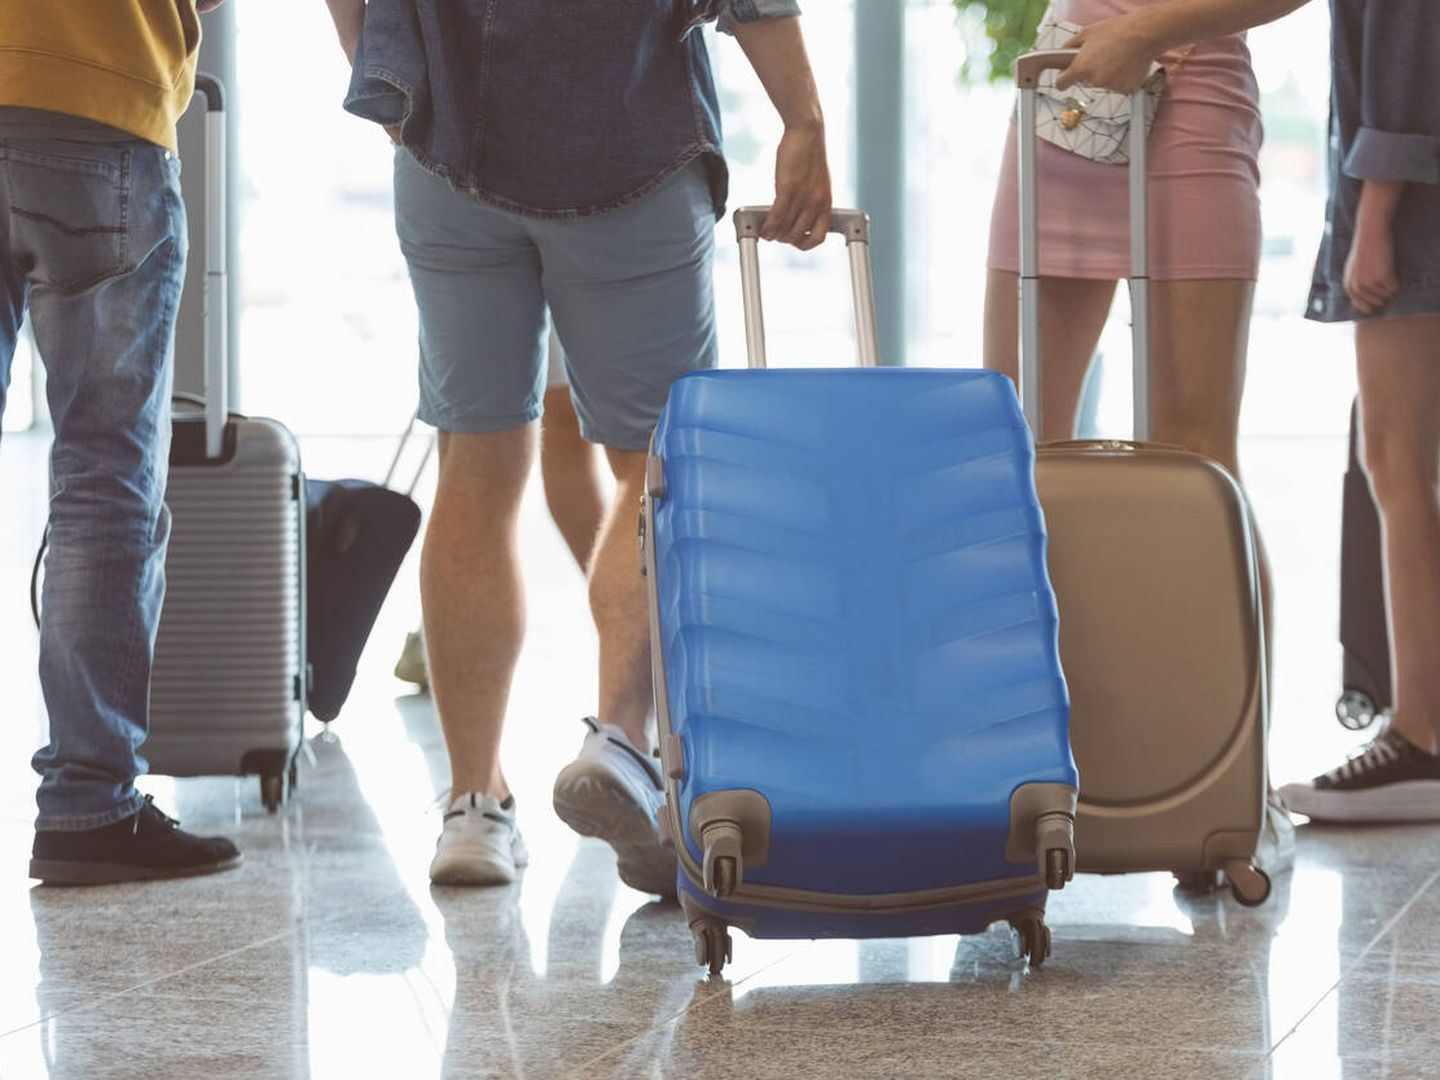 Pasajeros con el equipaje en el aeropuerto (iStock)